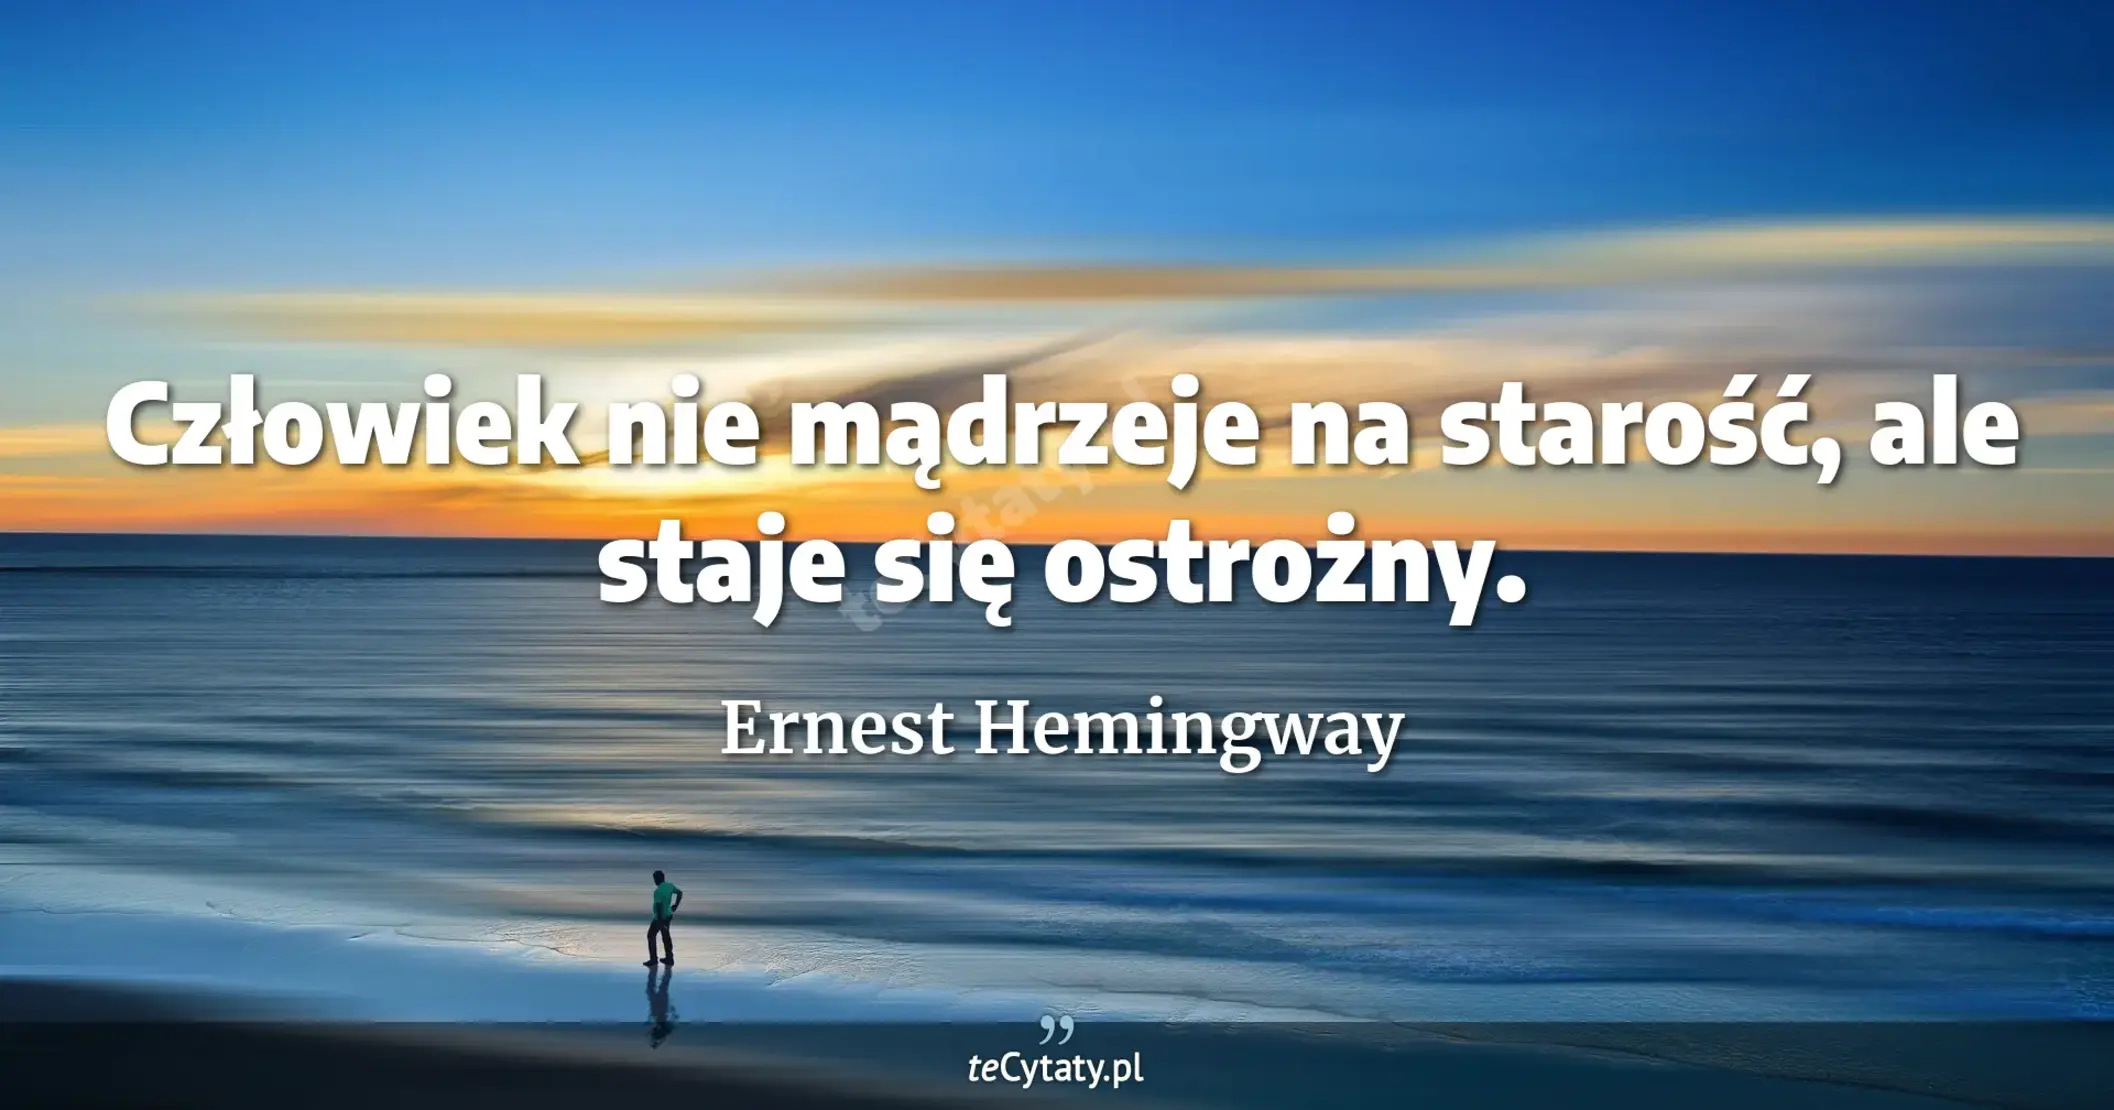 Człowiek nie mądrzeje na starość, ale staje się ostrożny. - Ernest Hemingway